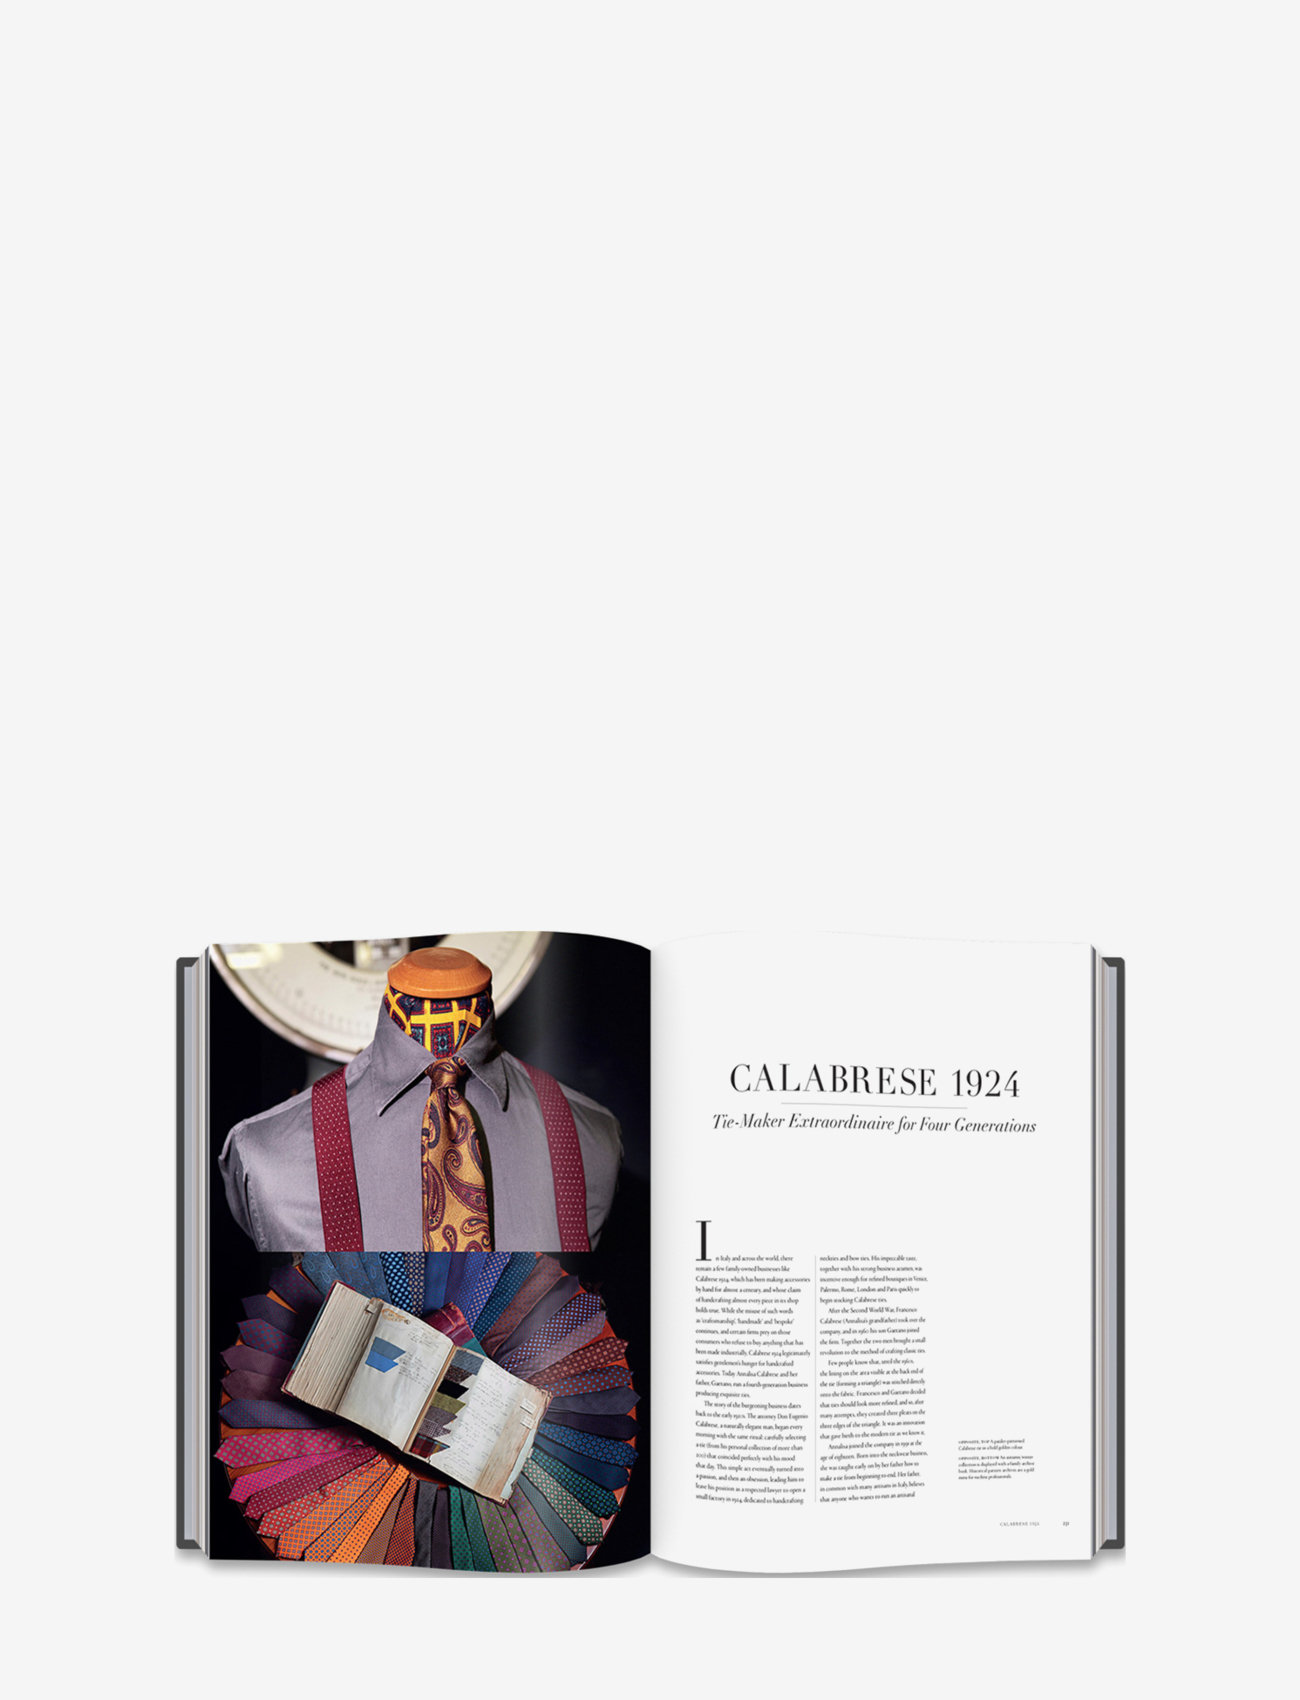 New Mags - The Italian Gentleman - zemākās cenas - multicolor - 1